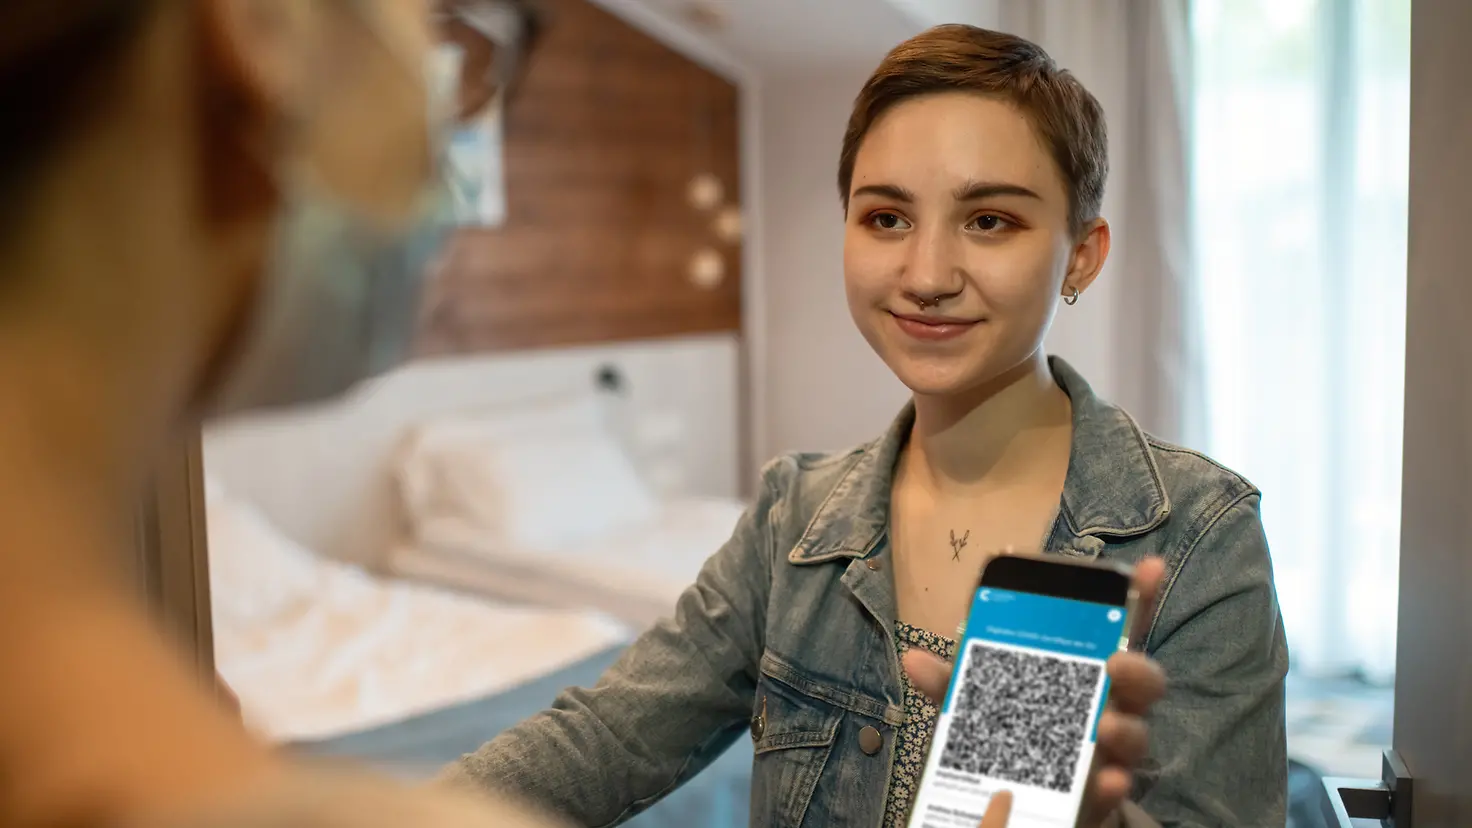 Junge Frau zeigt in einem Hotel ihren digitalen Covid-19-Impfpass mit QR-Code auf dem Smartphone.